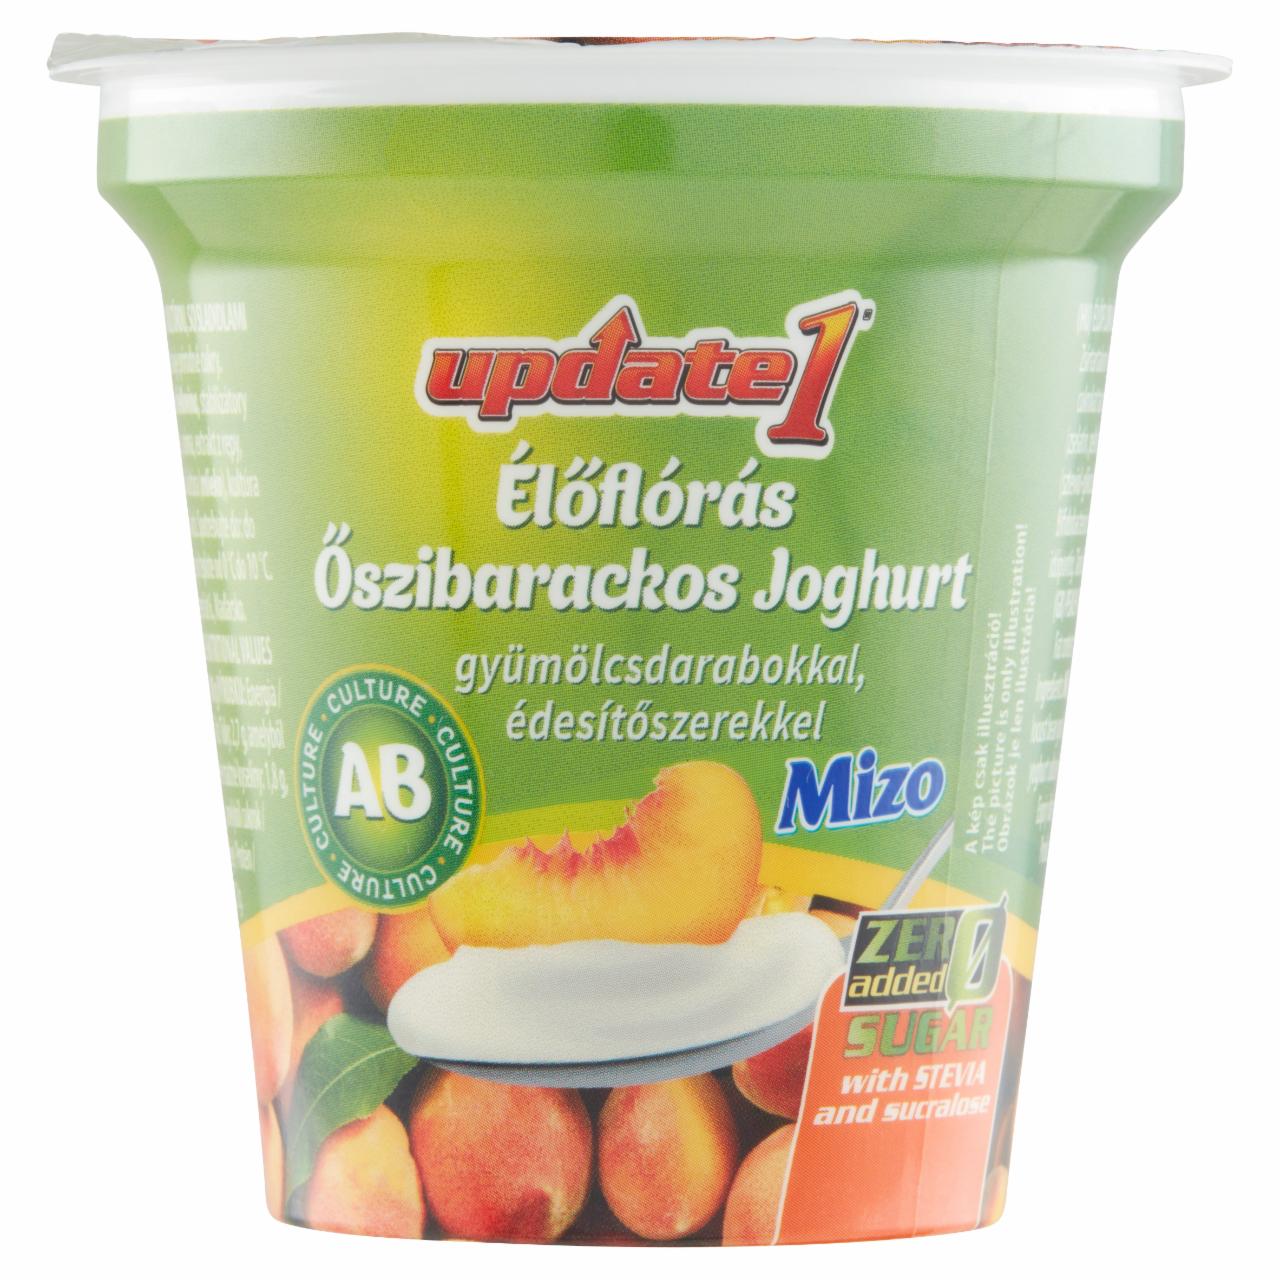 Képek - Update 1 élőflórás őszibarackos joghurt gyümölcsdarabokkal, édesítőszerekkel Mizo